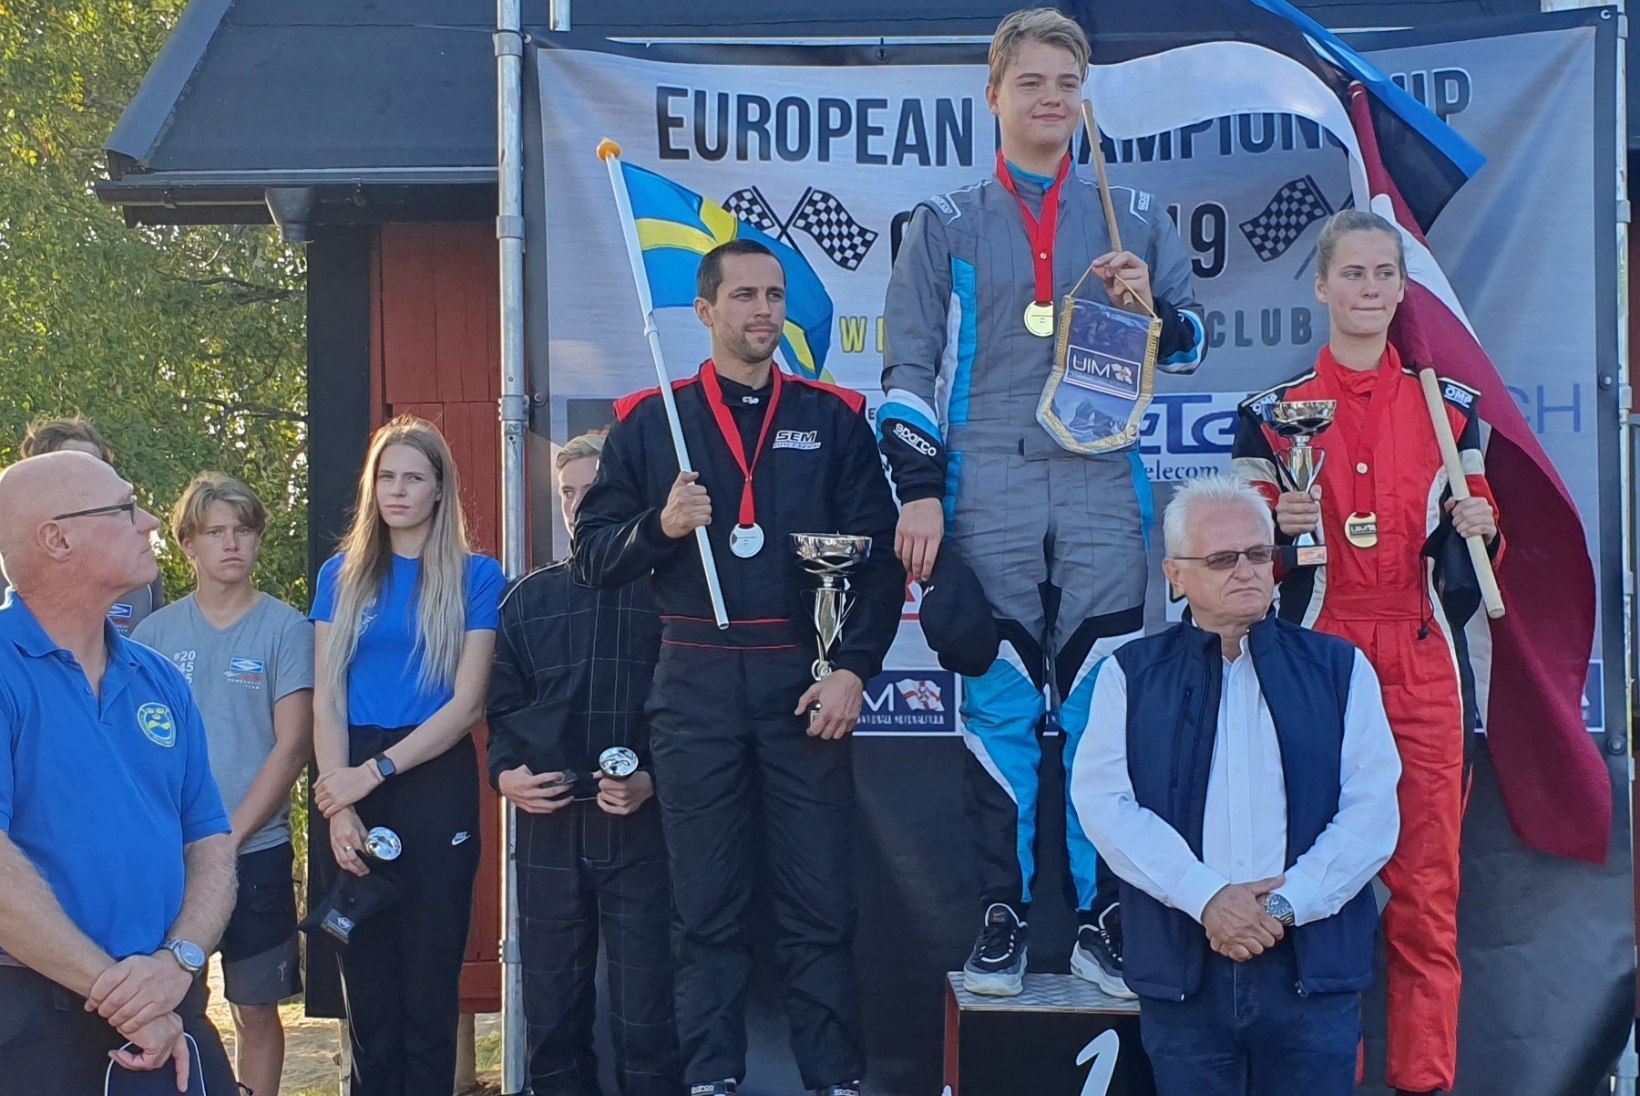 TUBLI! Eesti veemotosportlane võitis Euroopa meistritiitli ja lahkub tipus